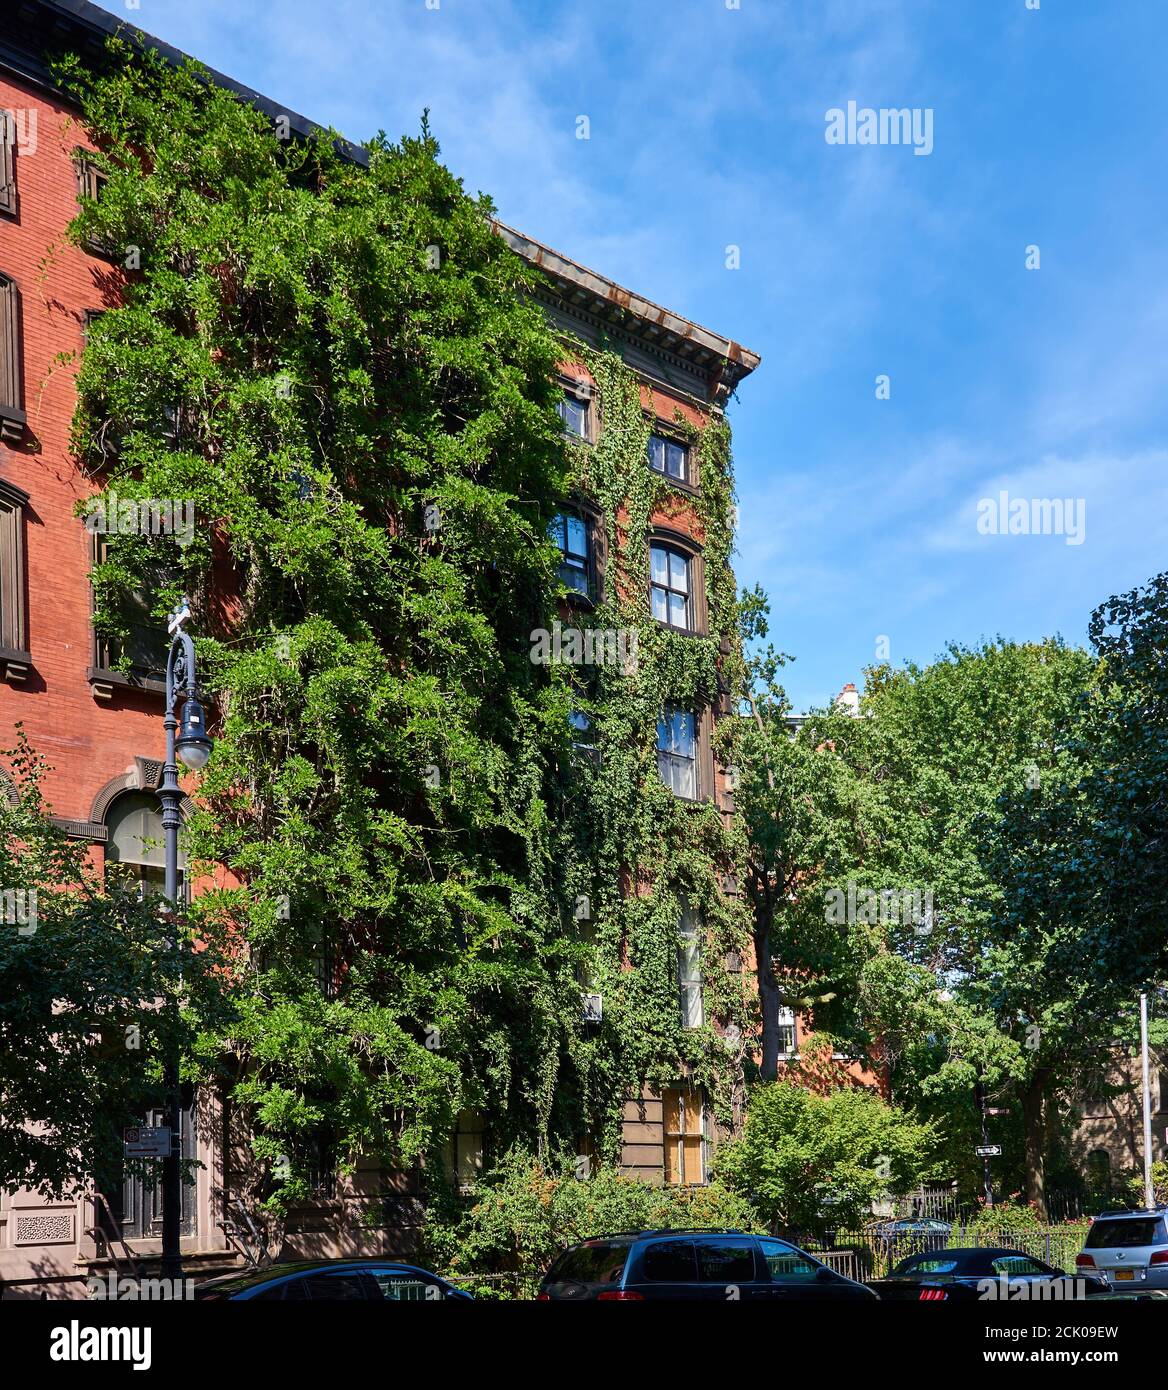 NEW YORK, NY - 7. SEPTEMBER 2020: Backsteinhaus im East Village von Manhattan, bedeckt von Glyzinien-Reben. Stockfoto